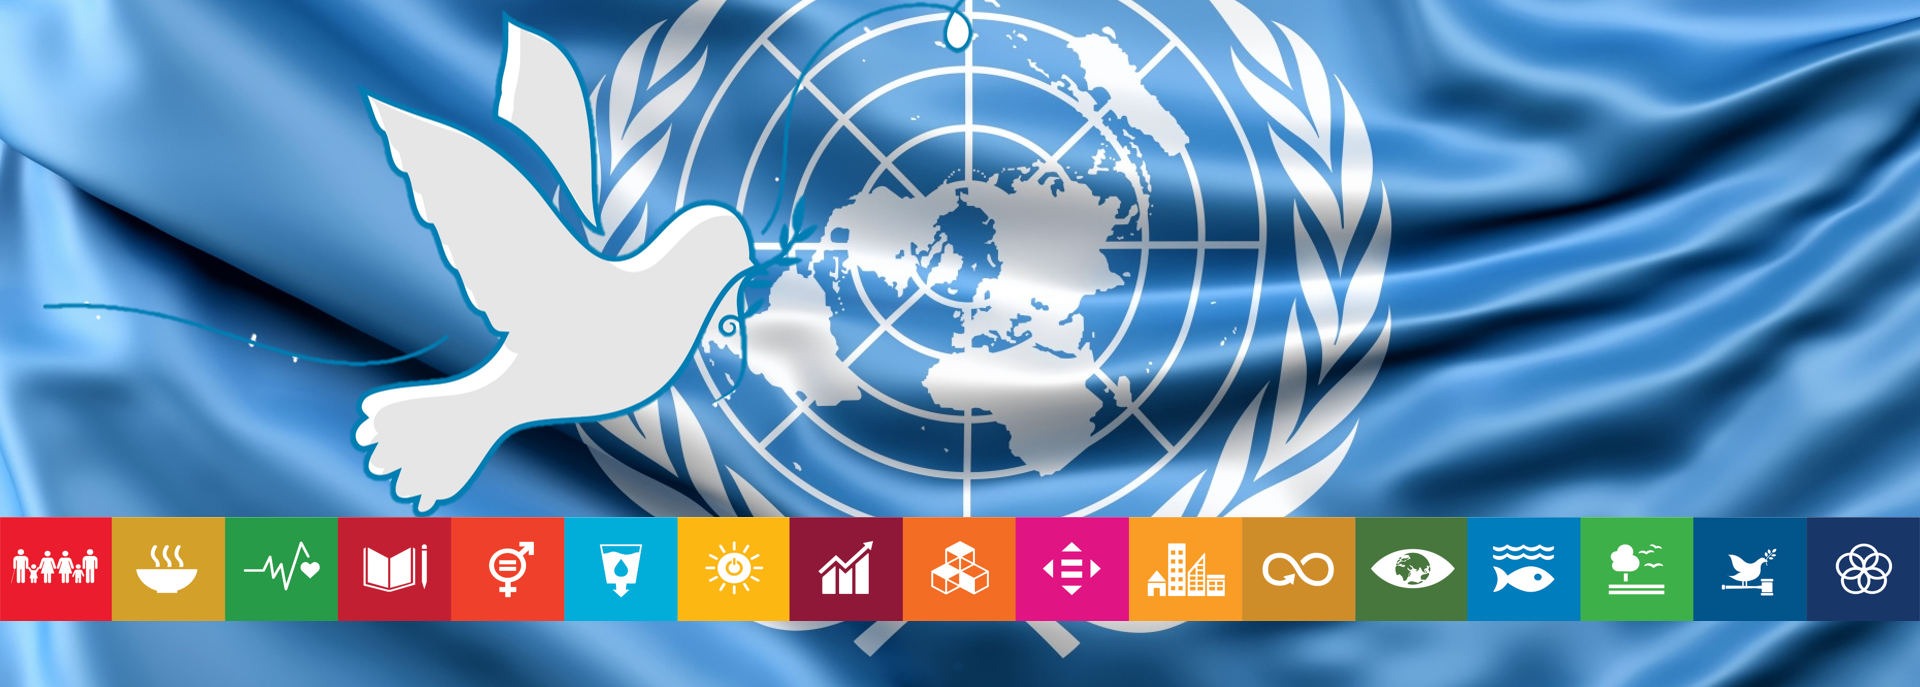 Bandera de Naciones Unidas con los íconos de los Objetivos de Desarrollo Sostenible.